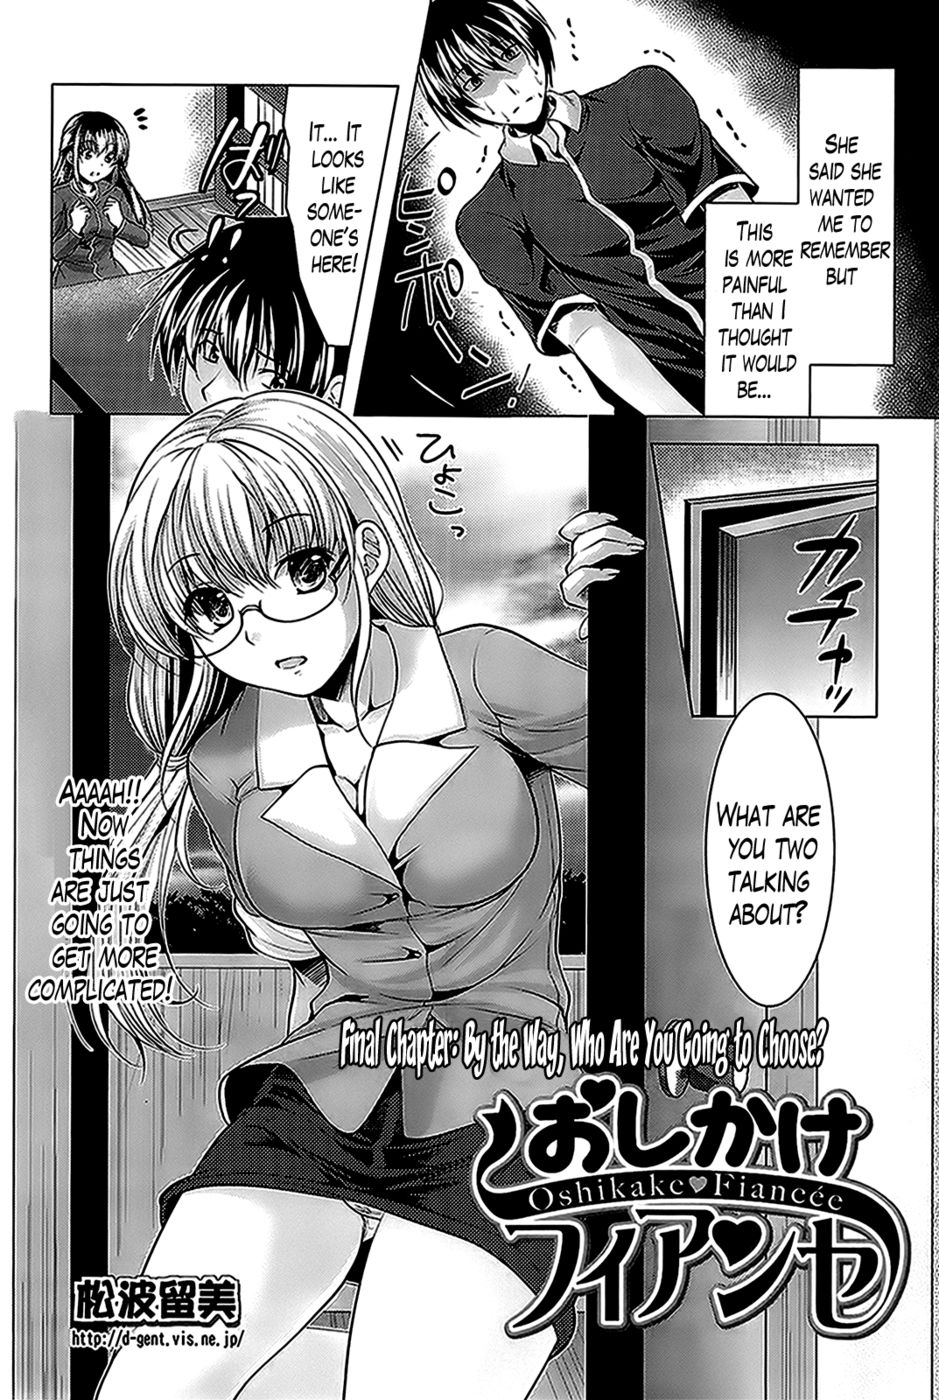 Hentai Manga Comic-Oshikake Fiancee-Chapter 9 - end-2